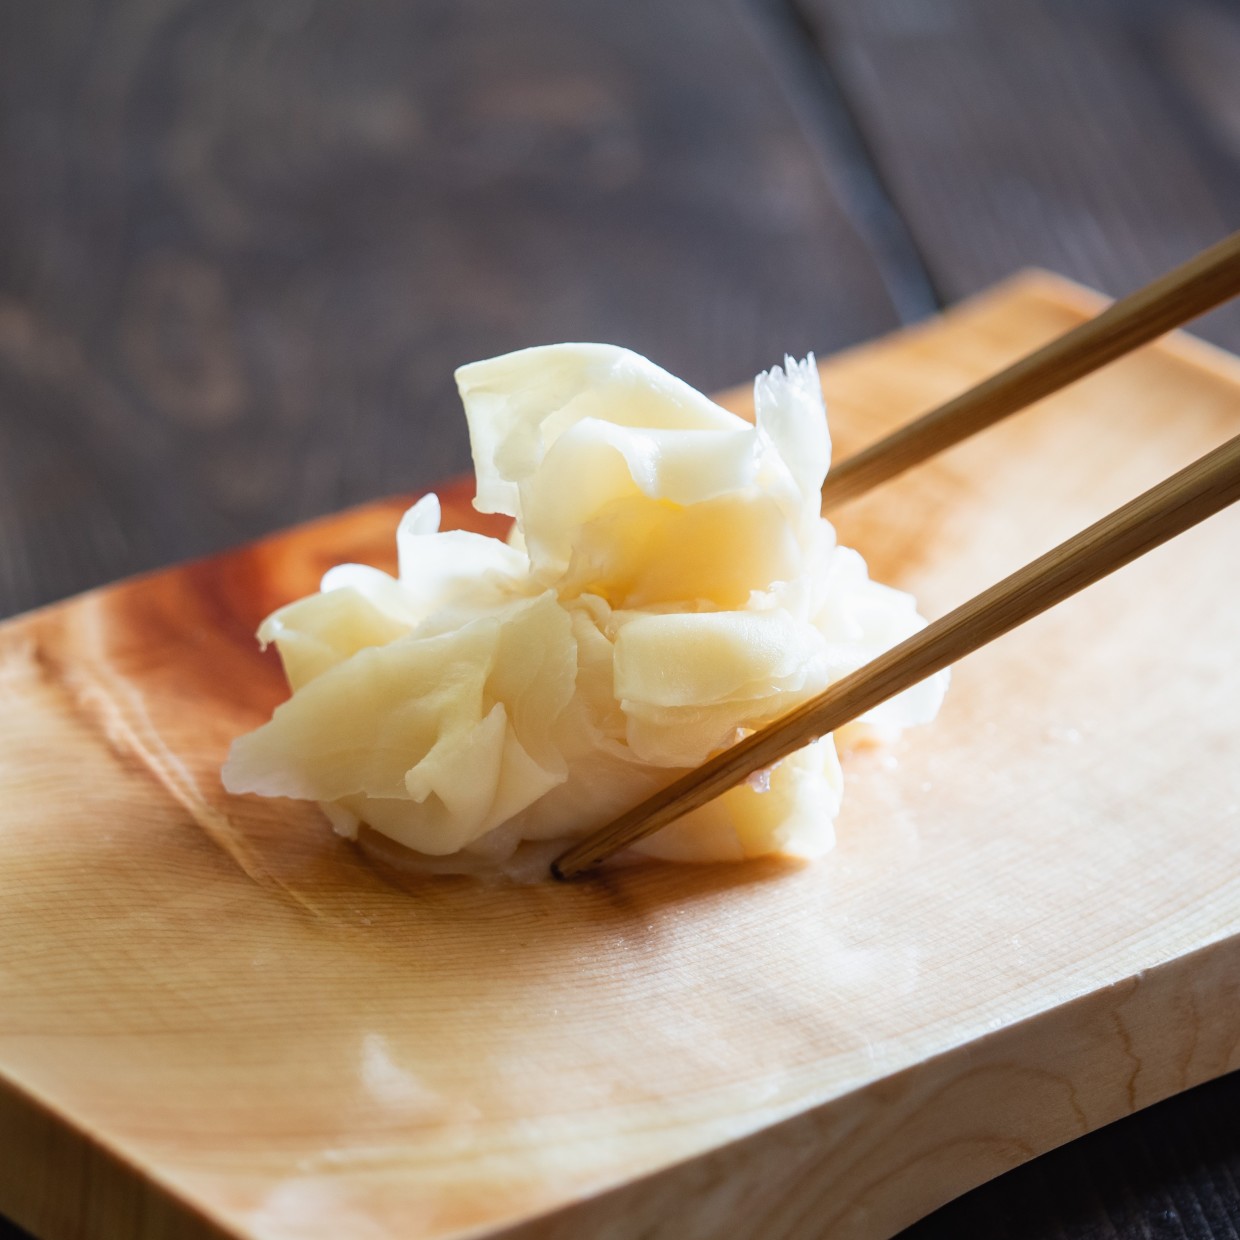  寿司についてくる「ガリ」そのまま食べていませんか？ご飯で巻いて食べる。意外と思いつかないレシピ 